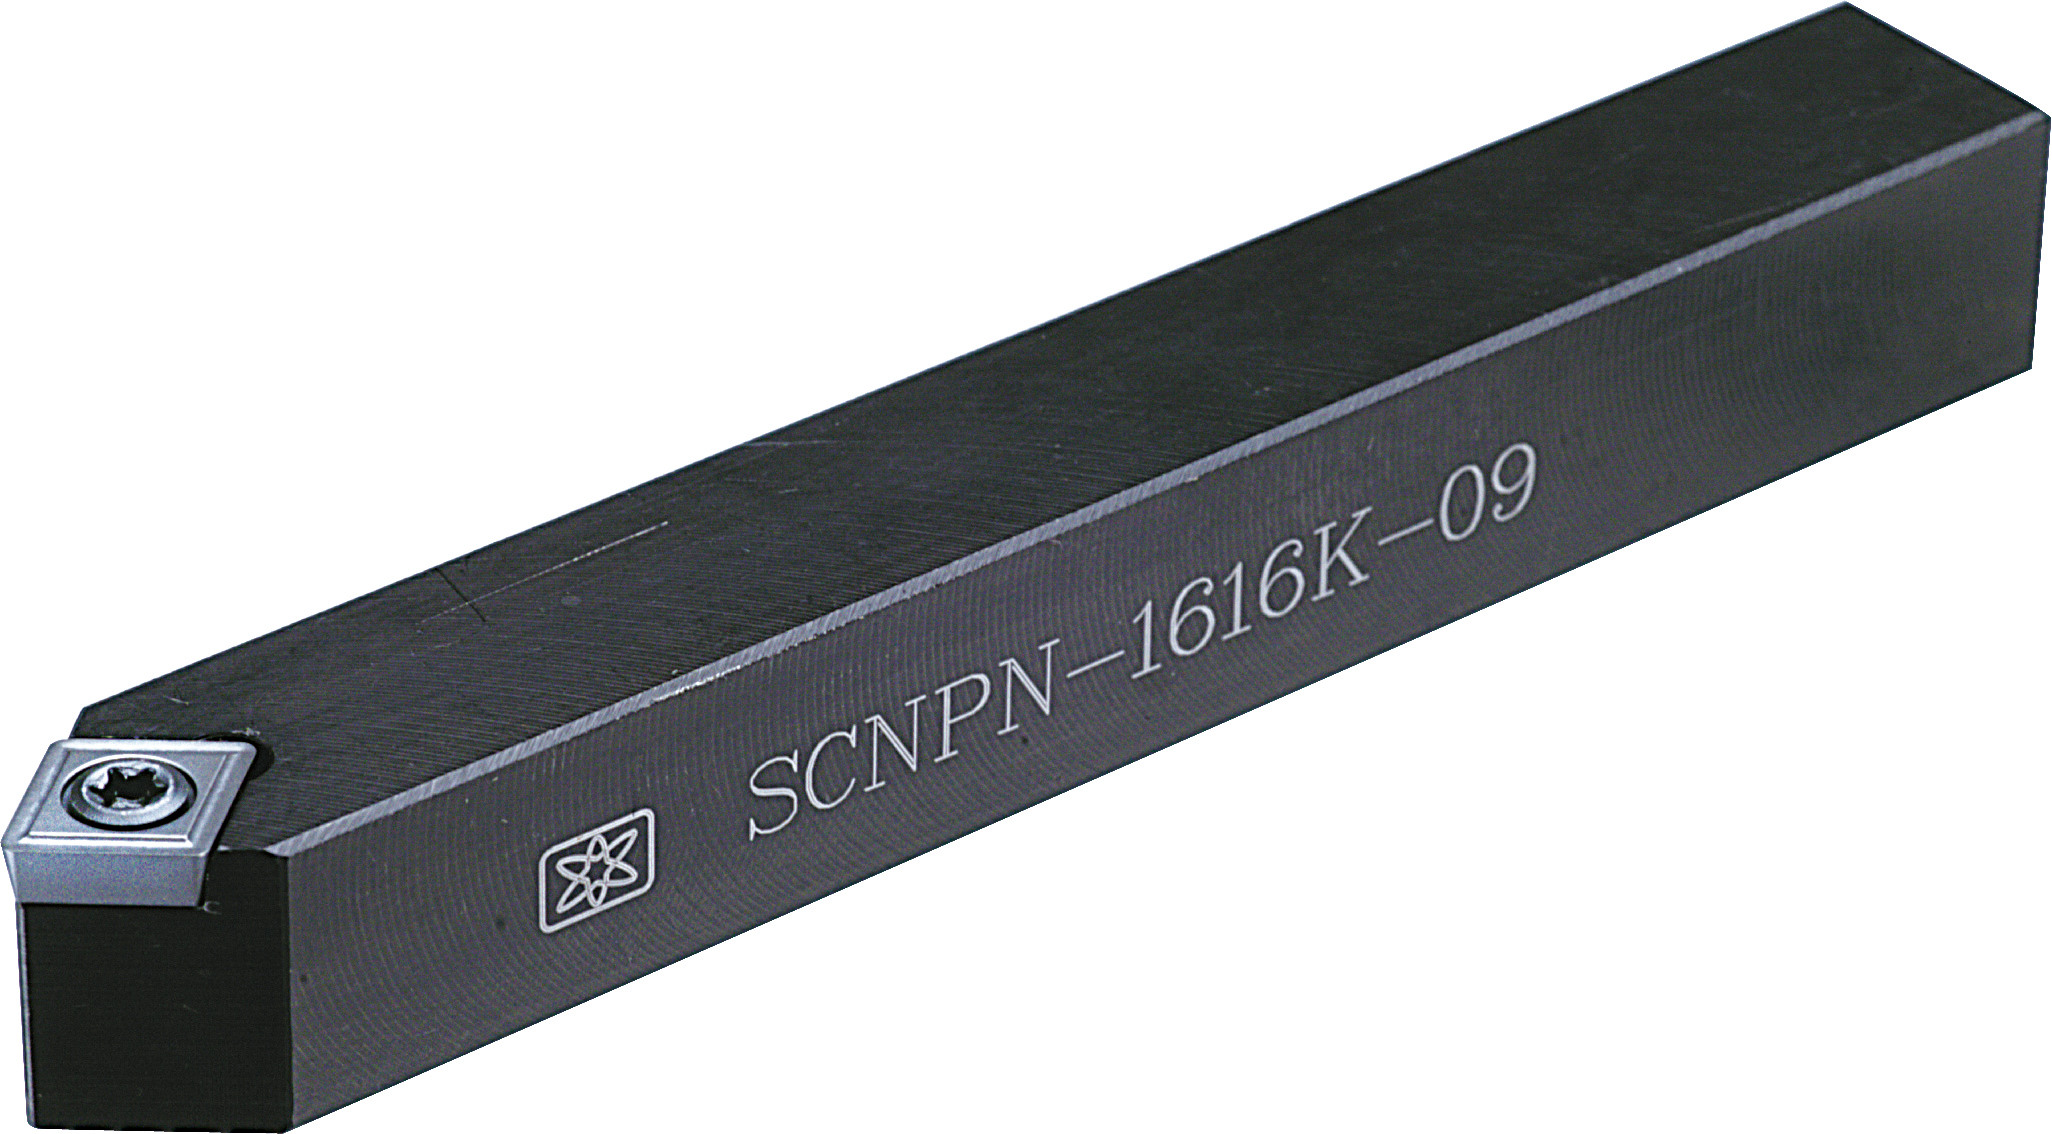 Catalog|SCNPN (CP..0903..) External Turning Tool Holder